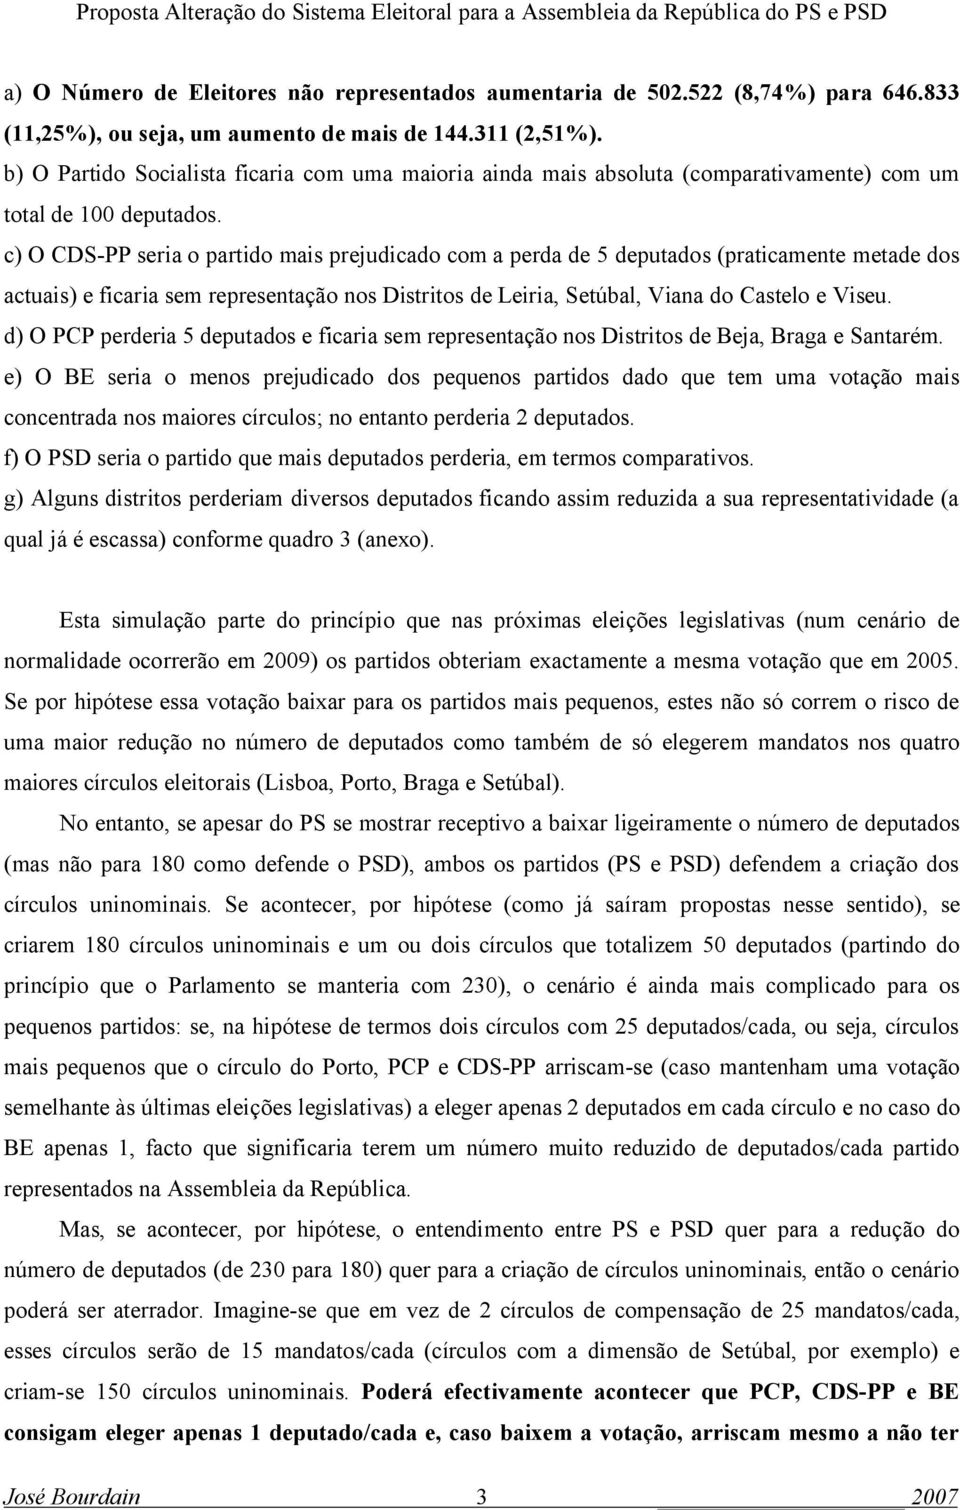 c) O CDS-PP seria o partido mais prejudicado com a perda de 5 deputados (praticamente metade dos actuais) e ficaria sem representação nos Distritos de Leiria, Setúbal, Viana do Castelo e Viseu.